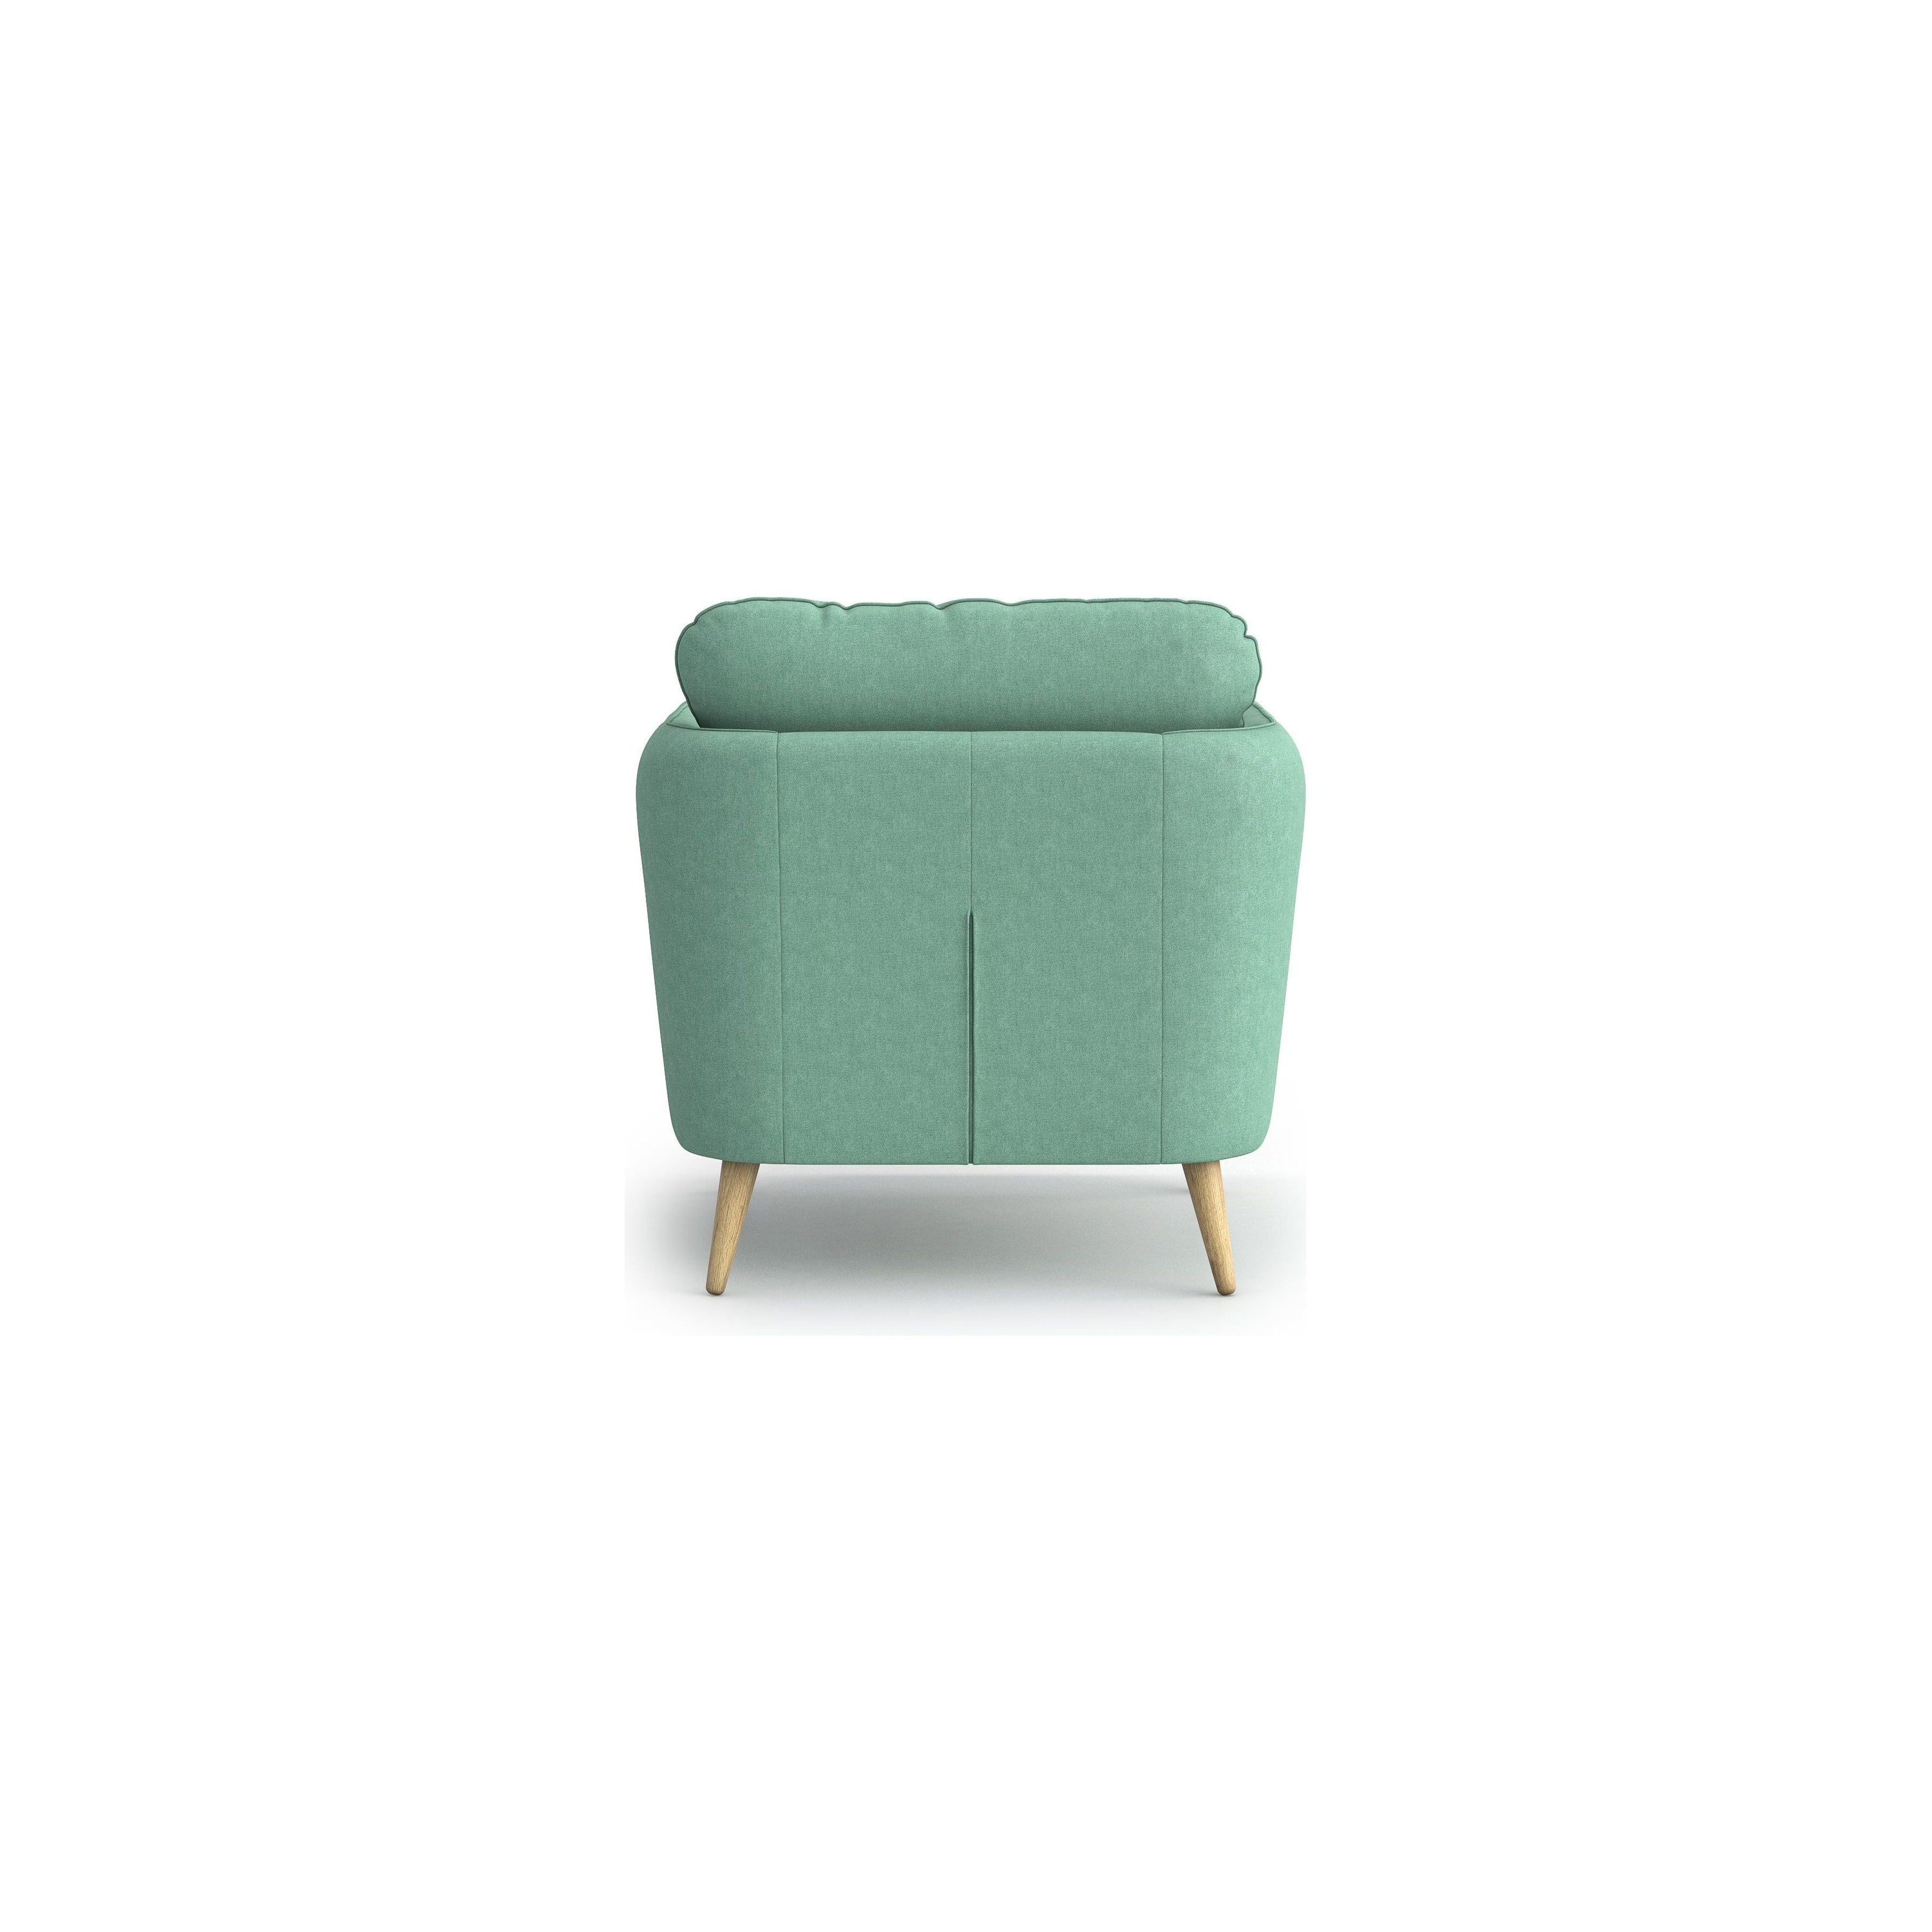 CLARA fotelis, šviesiai žalia spalva